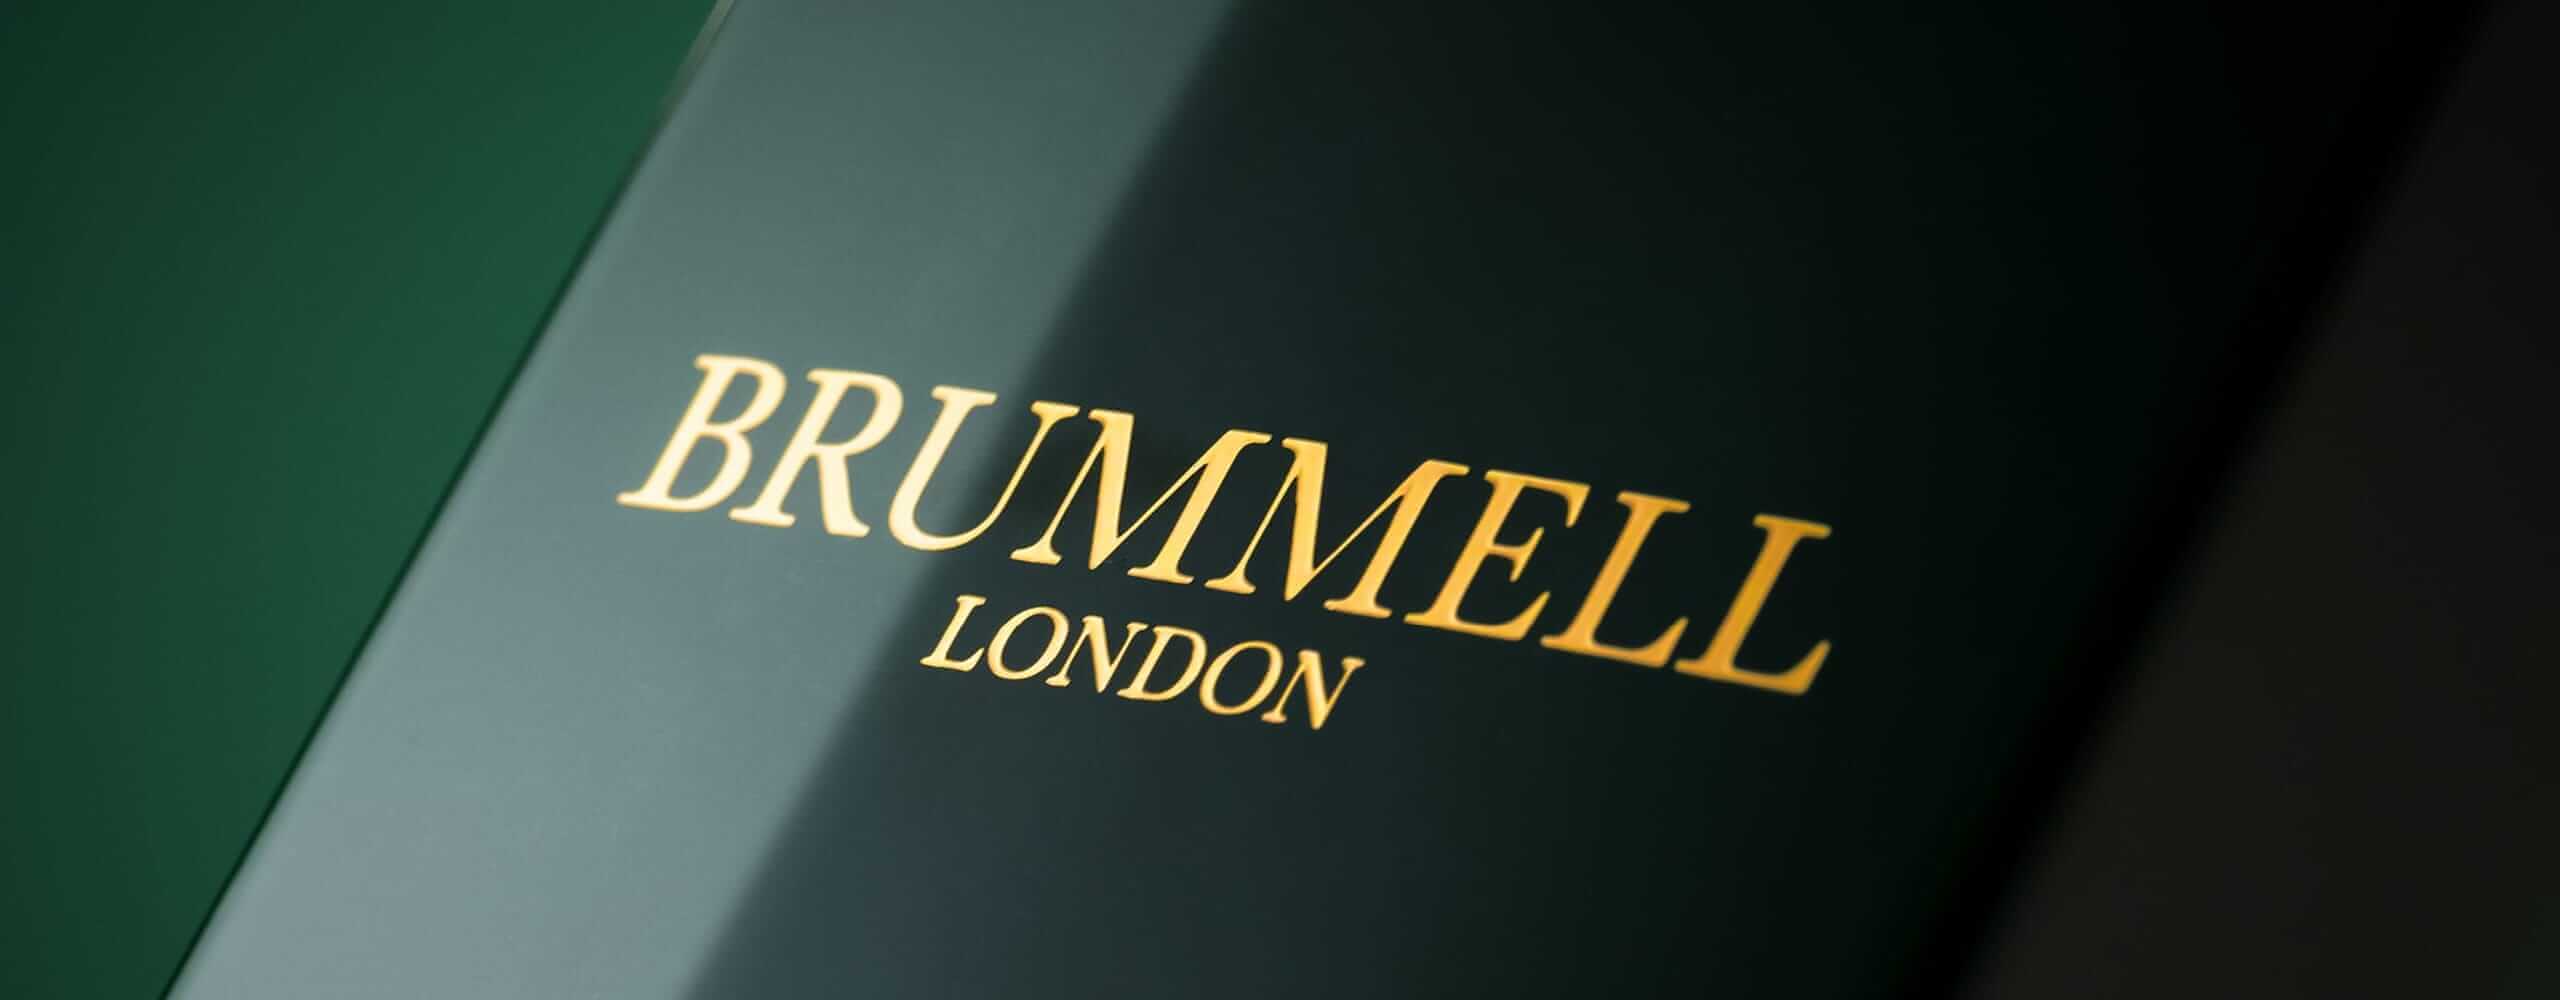 BRUMMELL LONDON